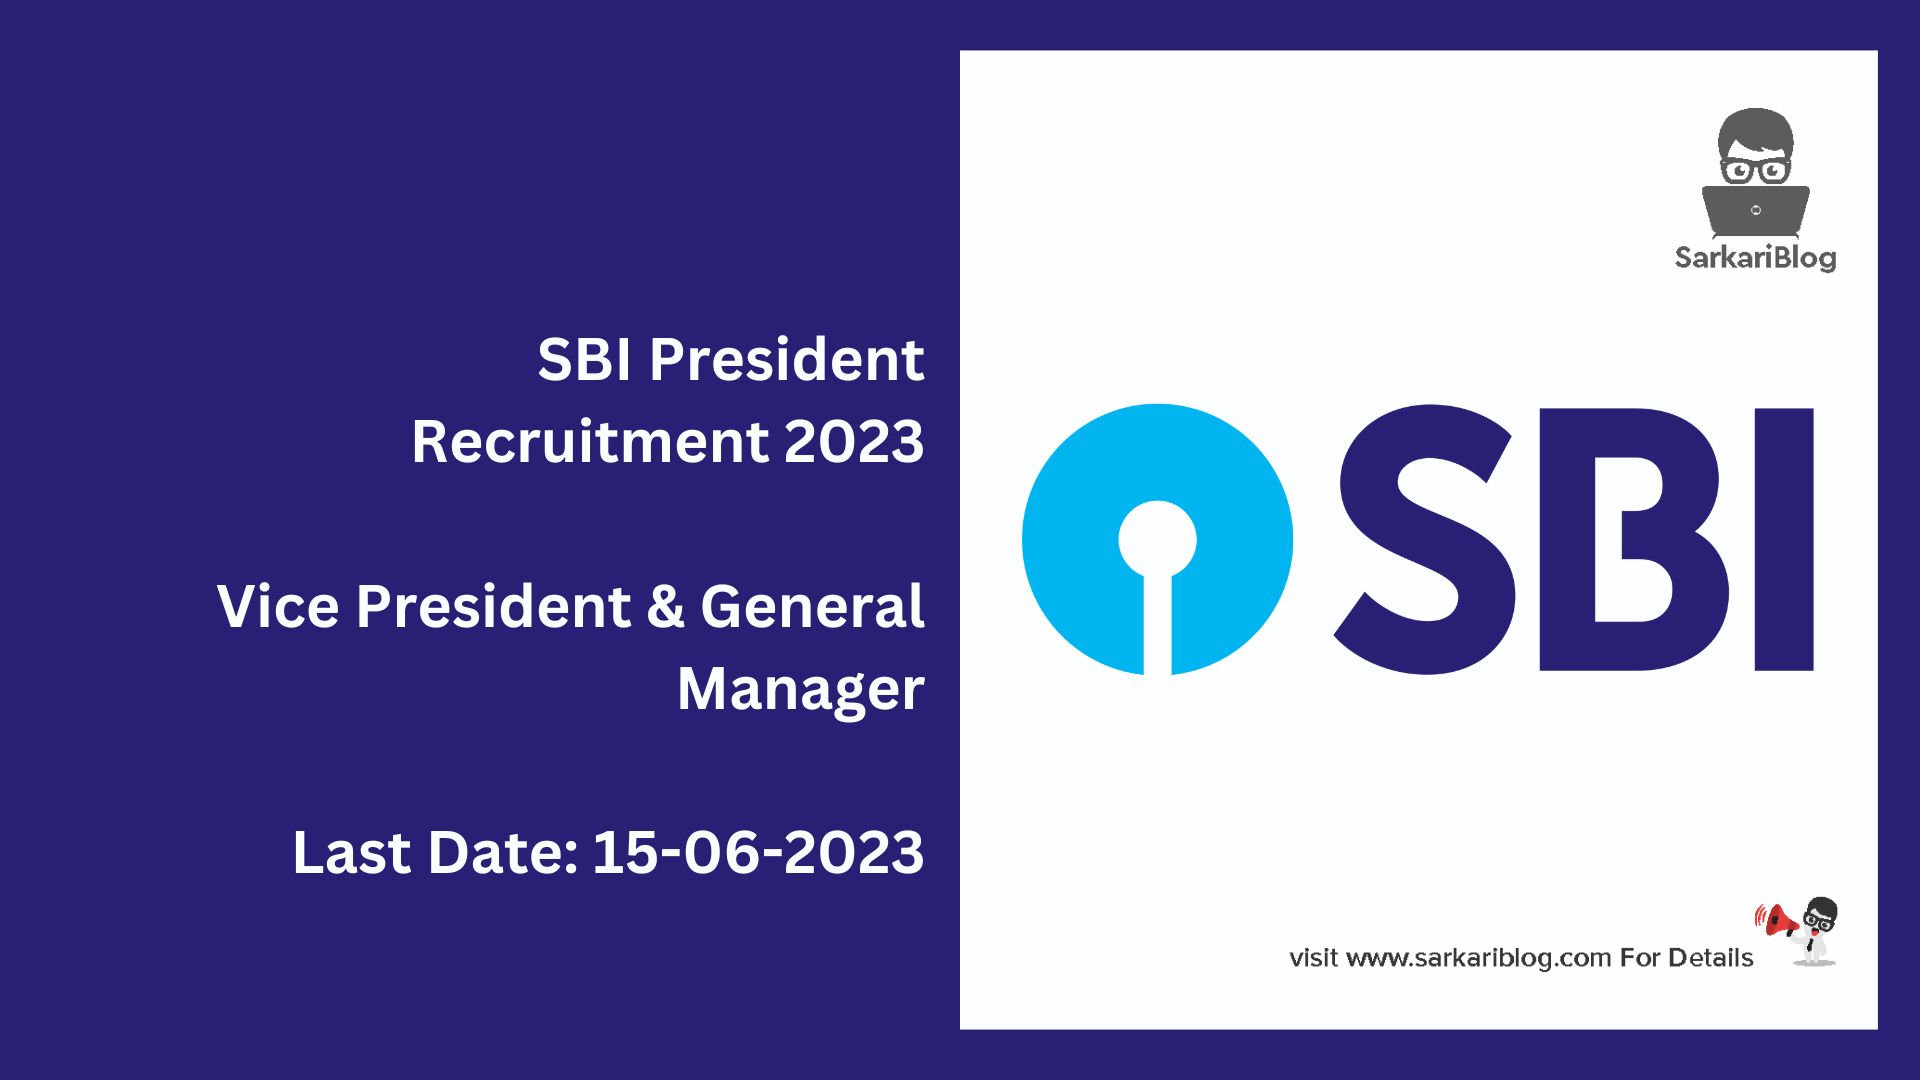 SBI President Recruitment 2023